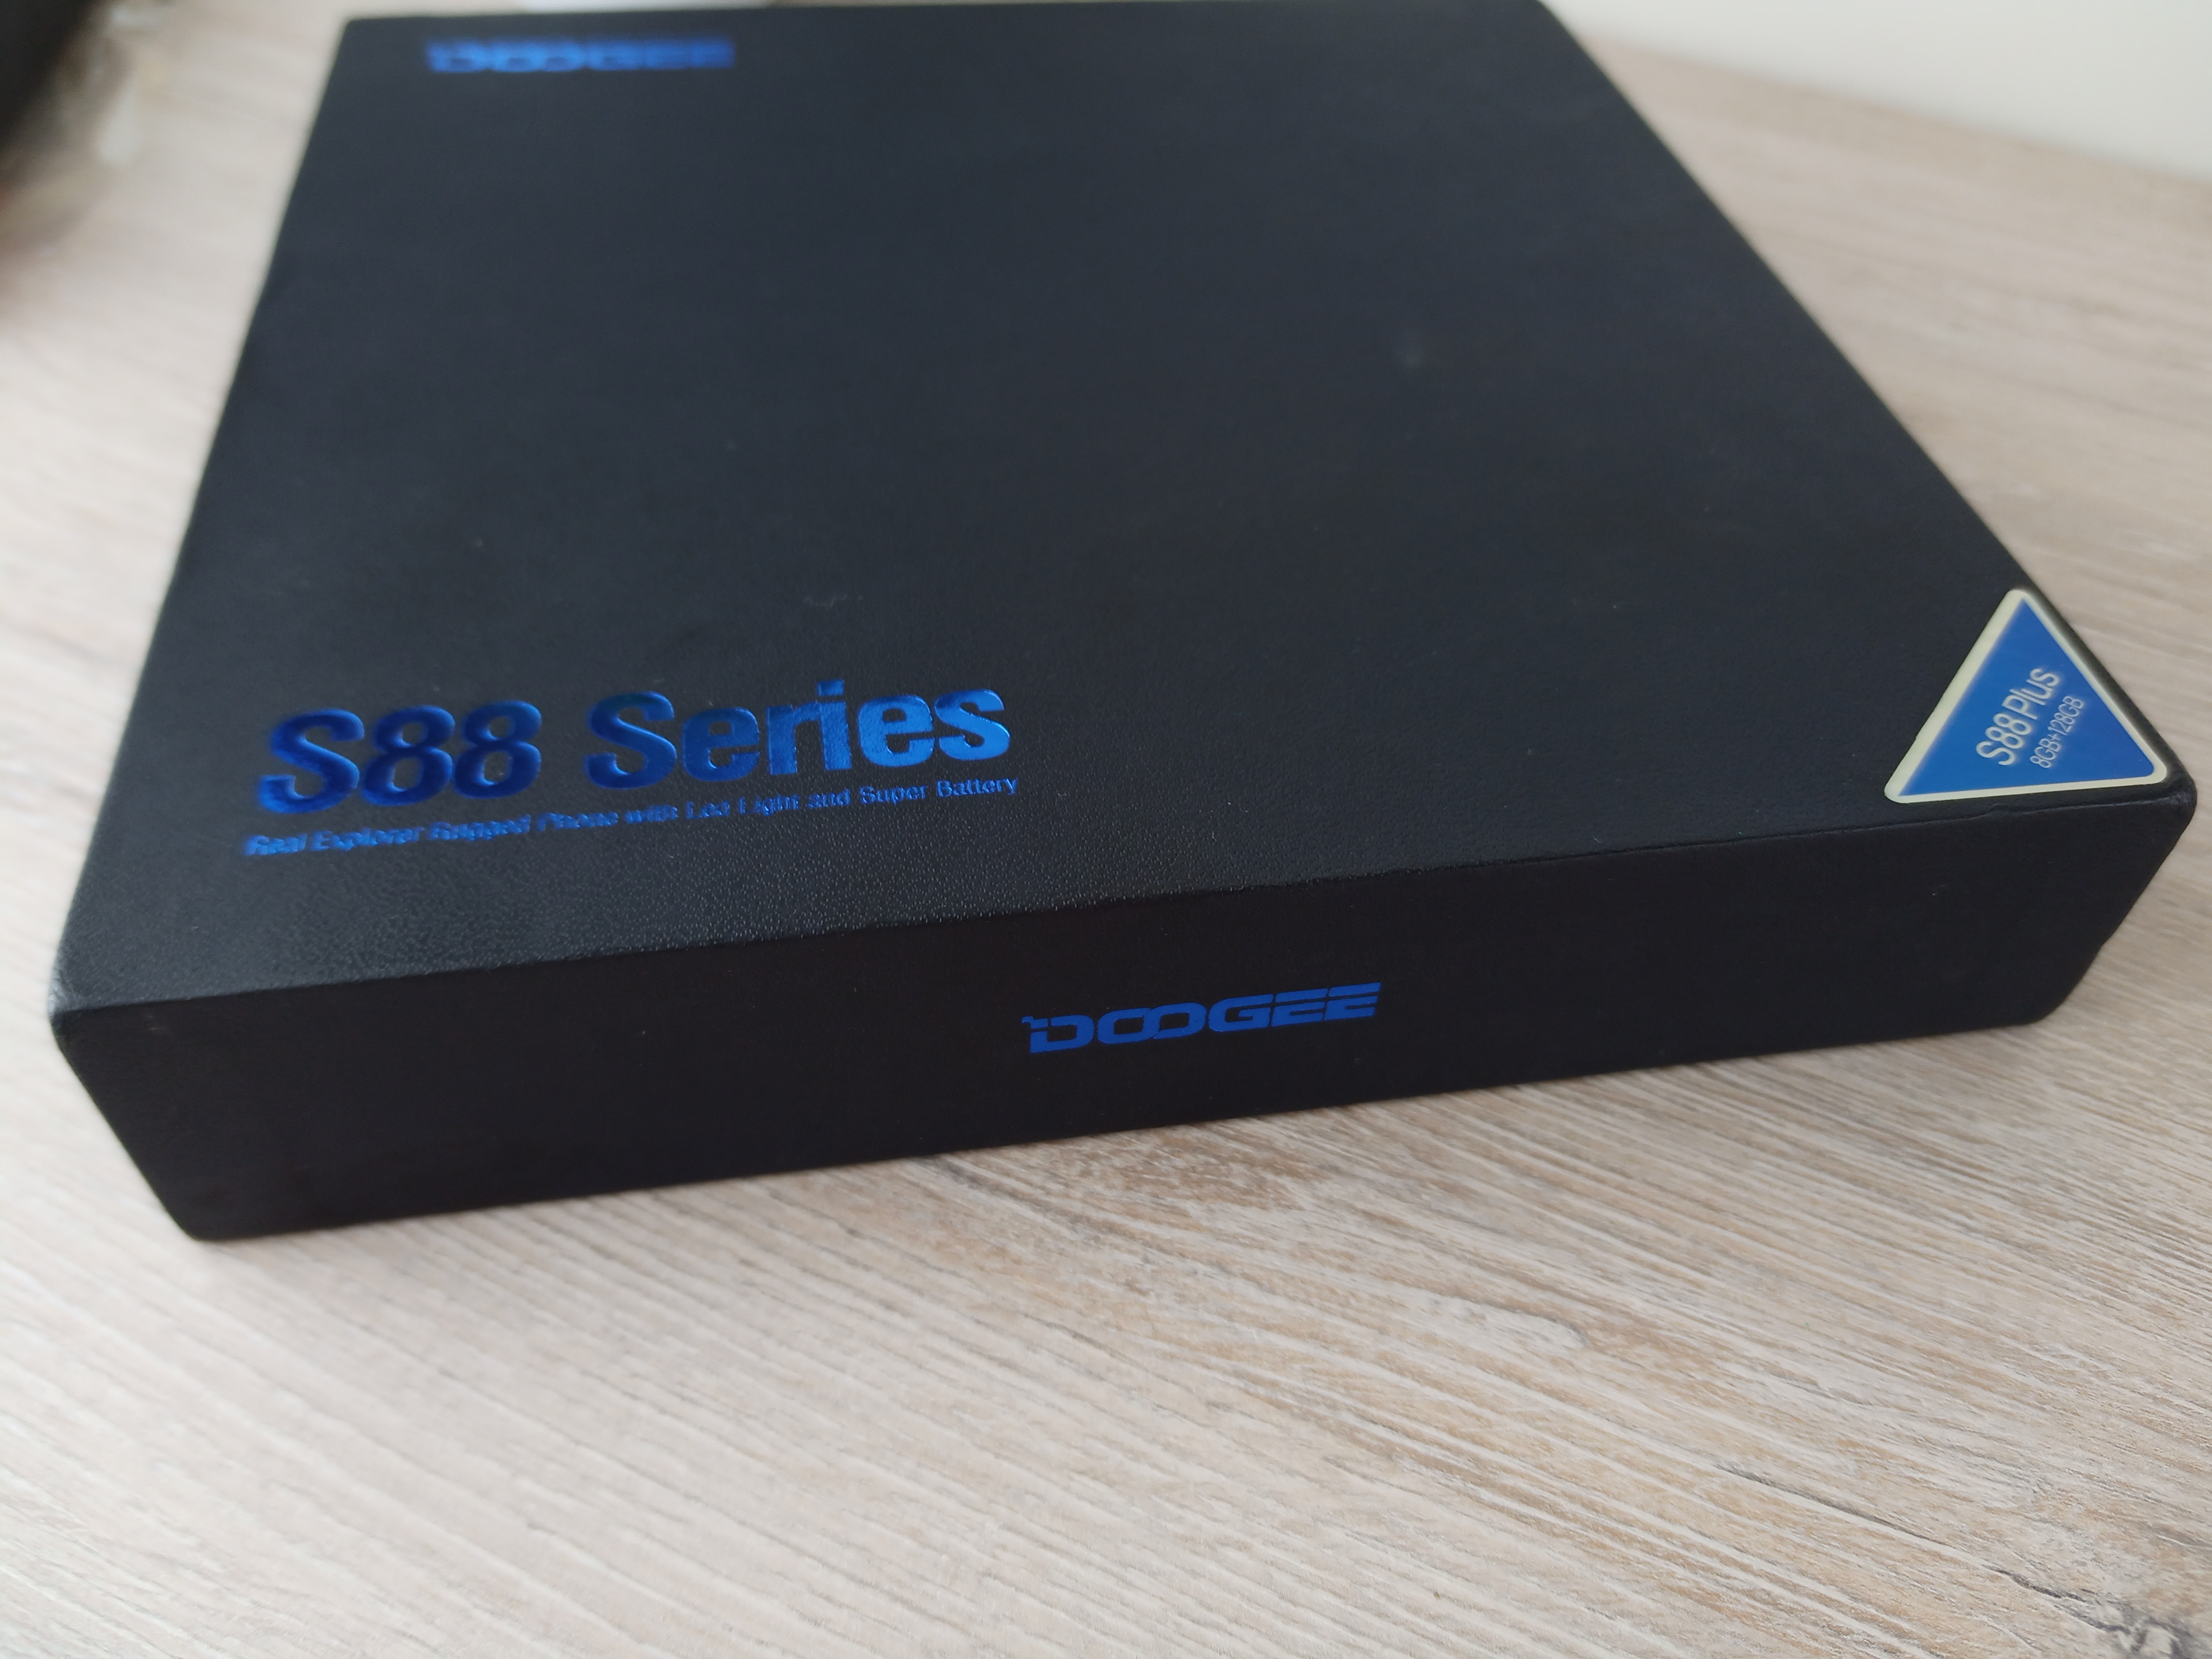 DOOGEE S88 Plus - Крутая Начинка в Защищенном Корпусе [ВИДЕО] ⋆ 11